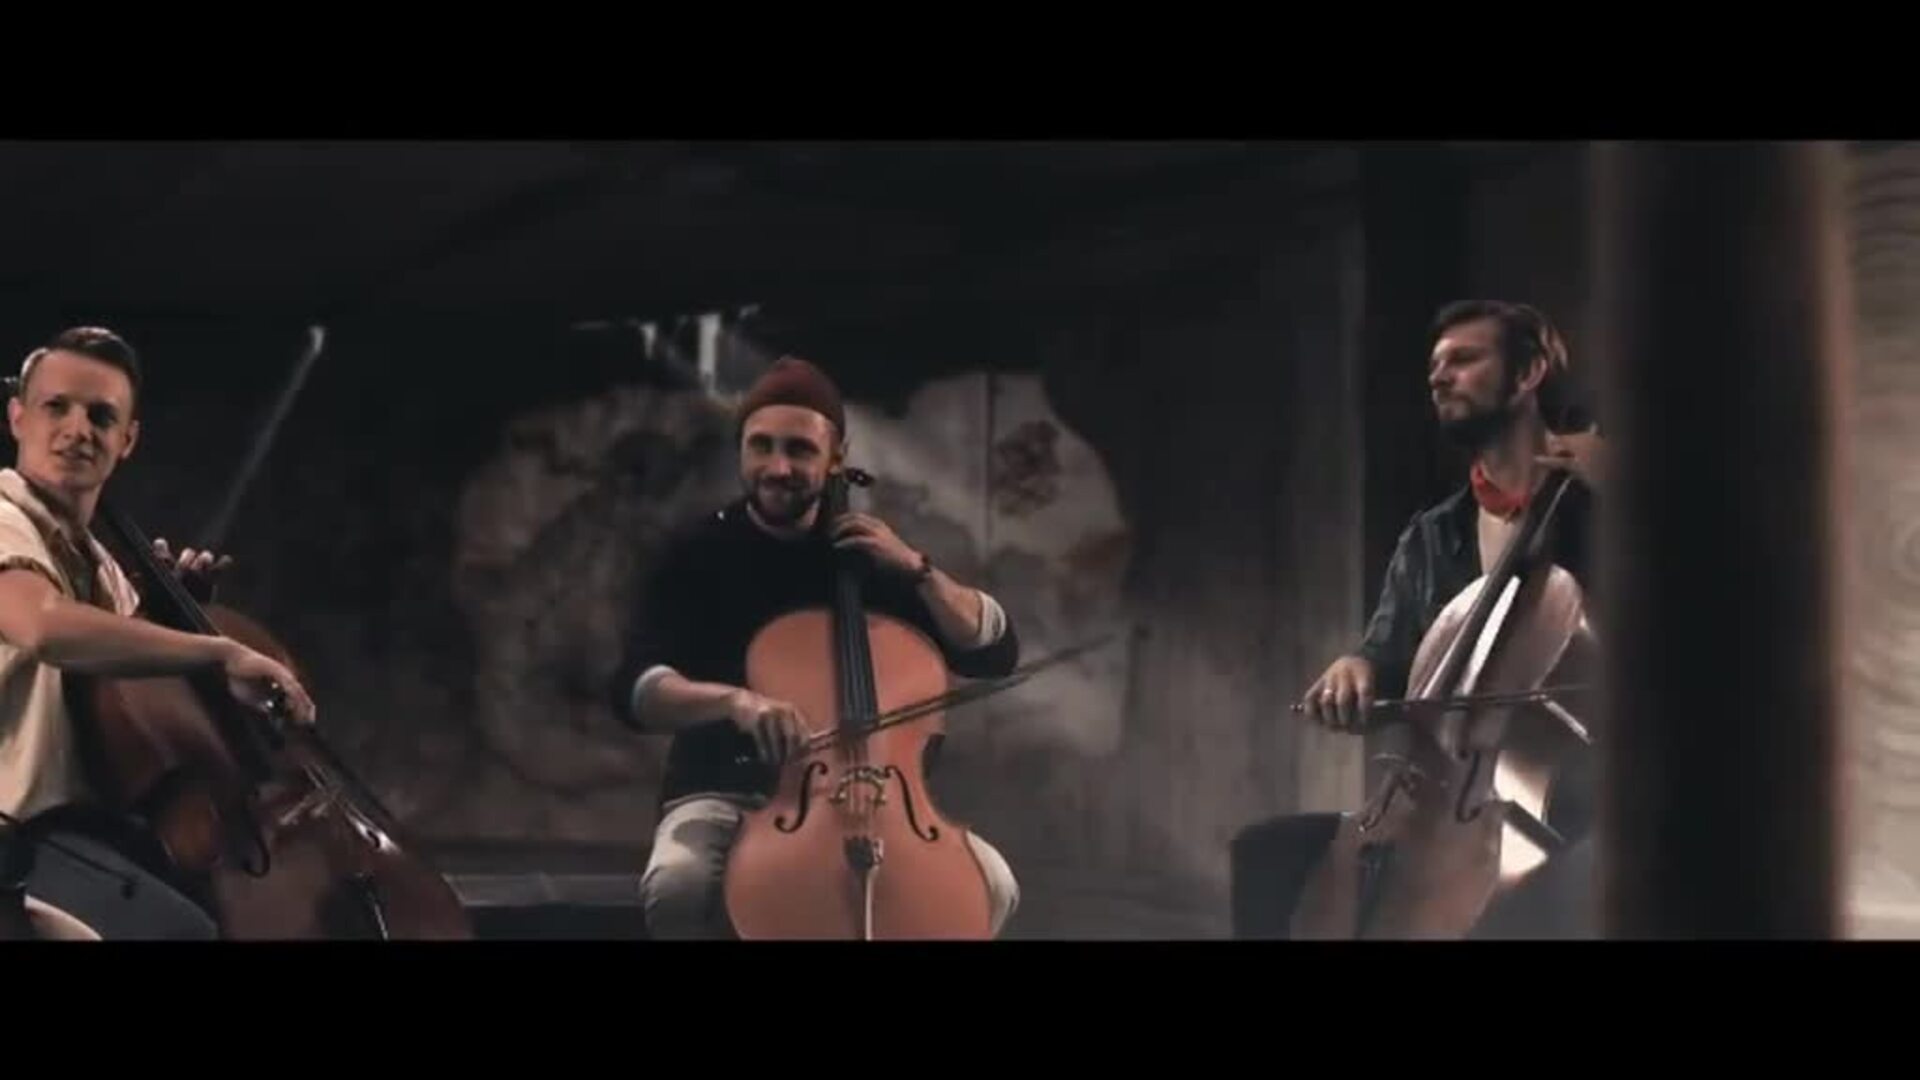 Cuatro virtuosos músicos checos actúan por primera vez en España